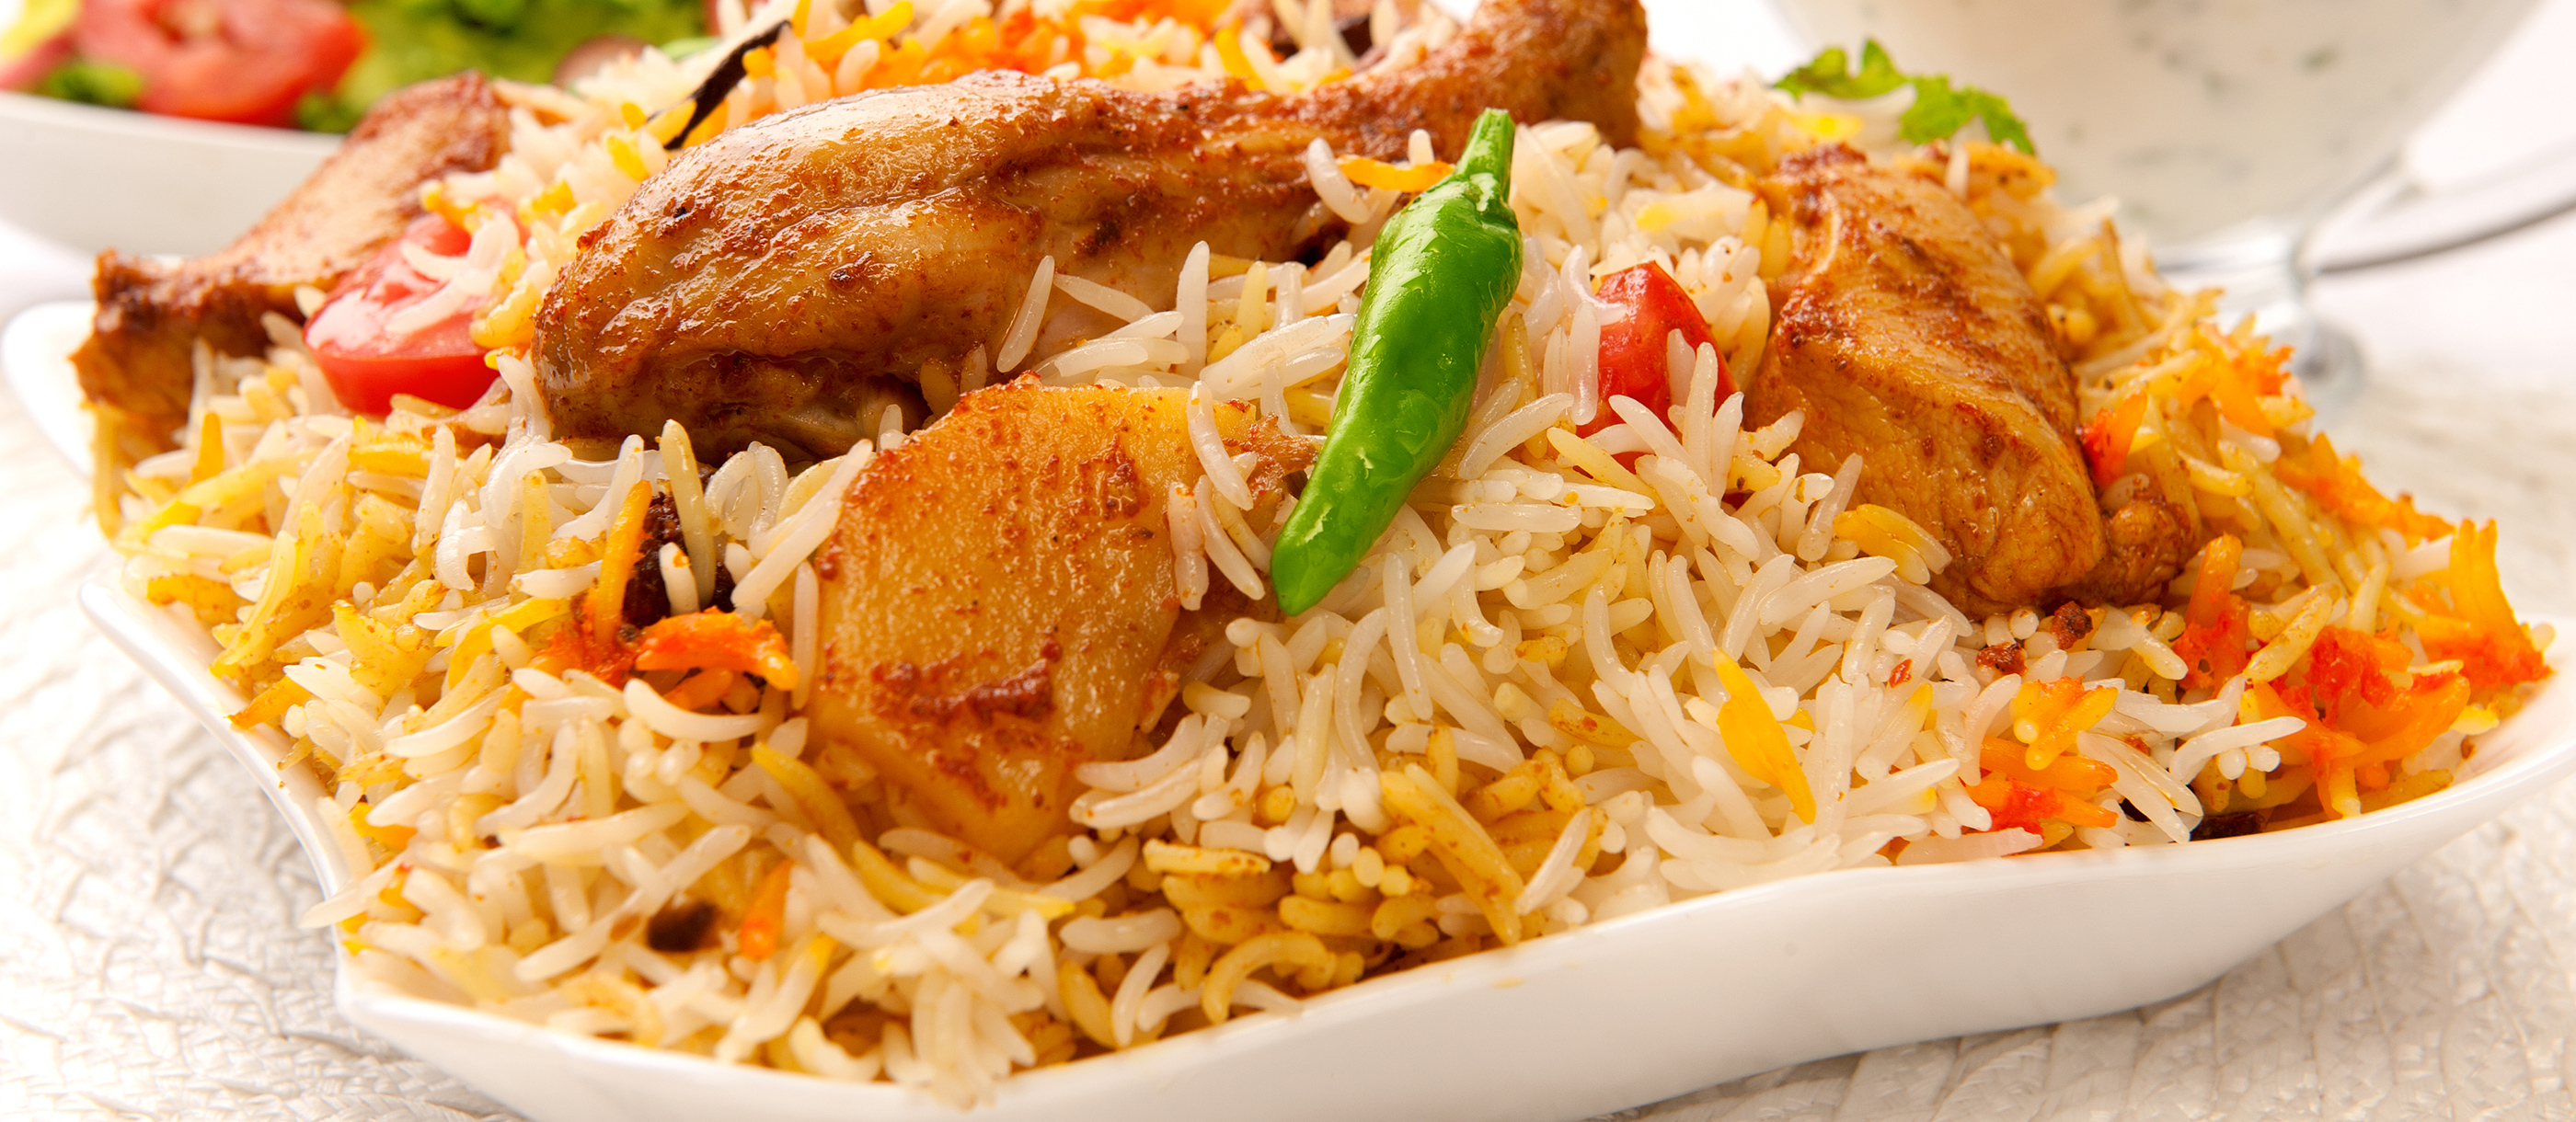 Most Popular Indian Food - TasteAtlas